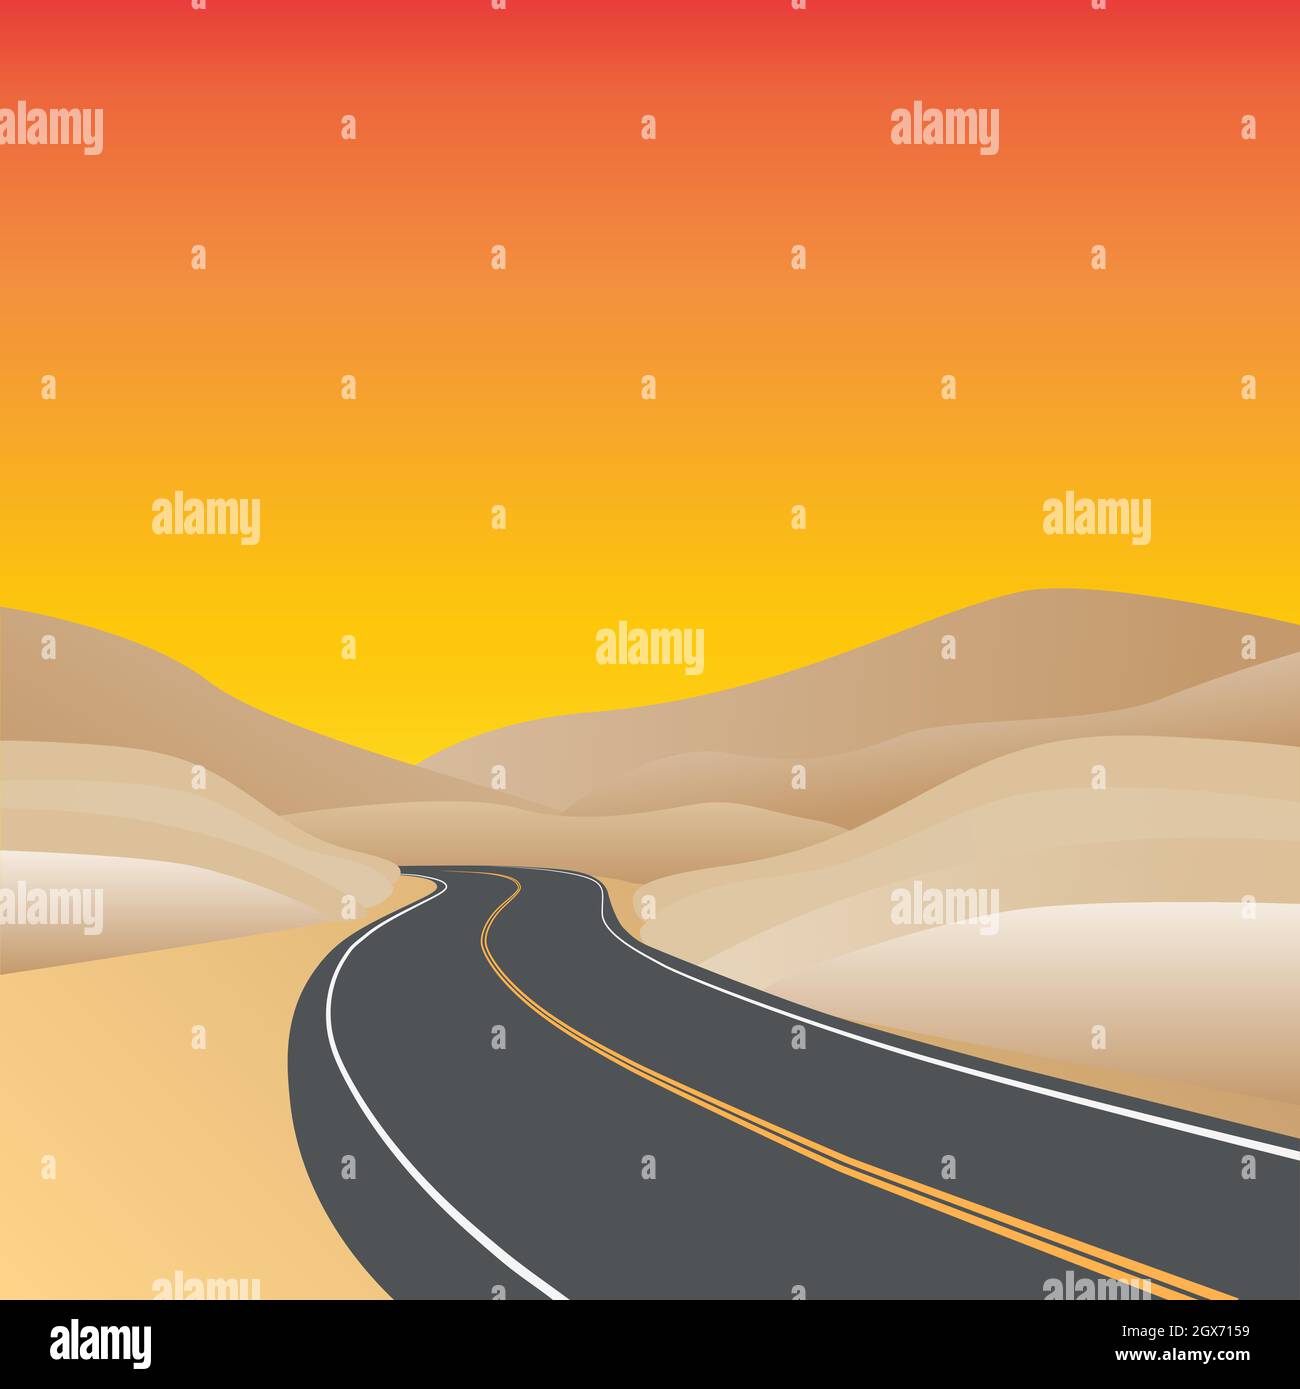 Kurvige Autobahn in einer Wüstenlandschaft mit Sonnenuntergangsfarben - Vektor-Illustration Stock Vektor